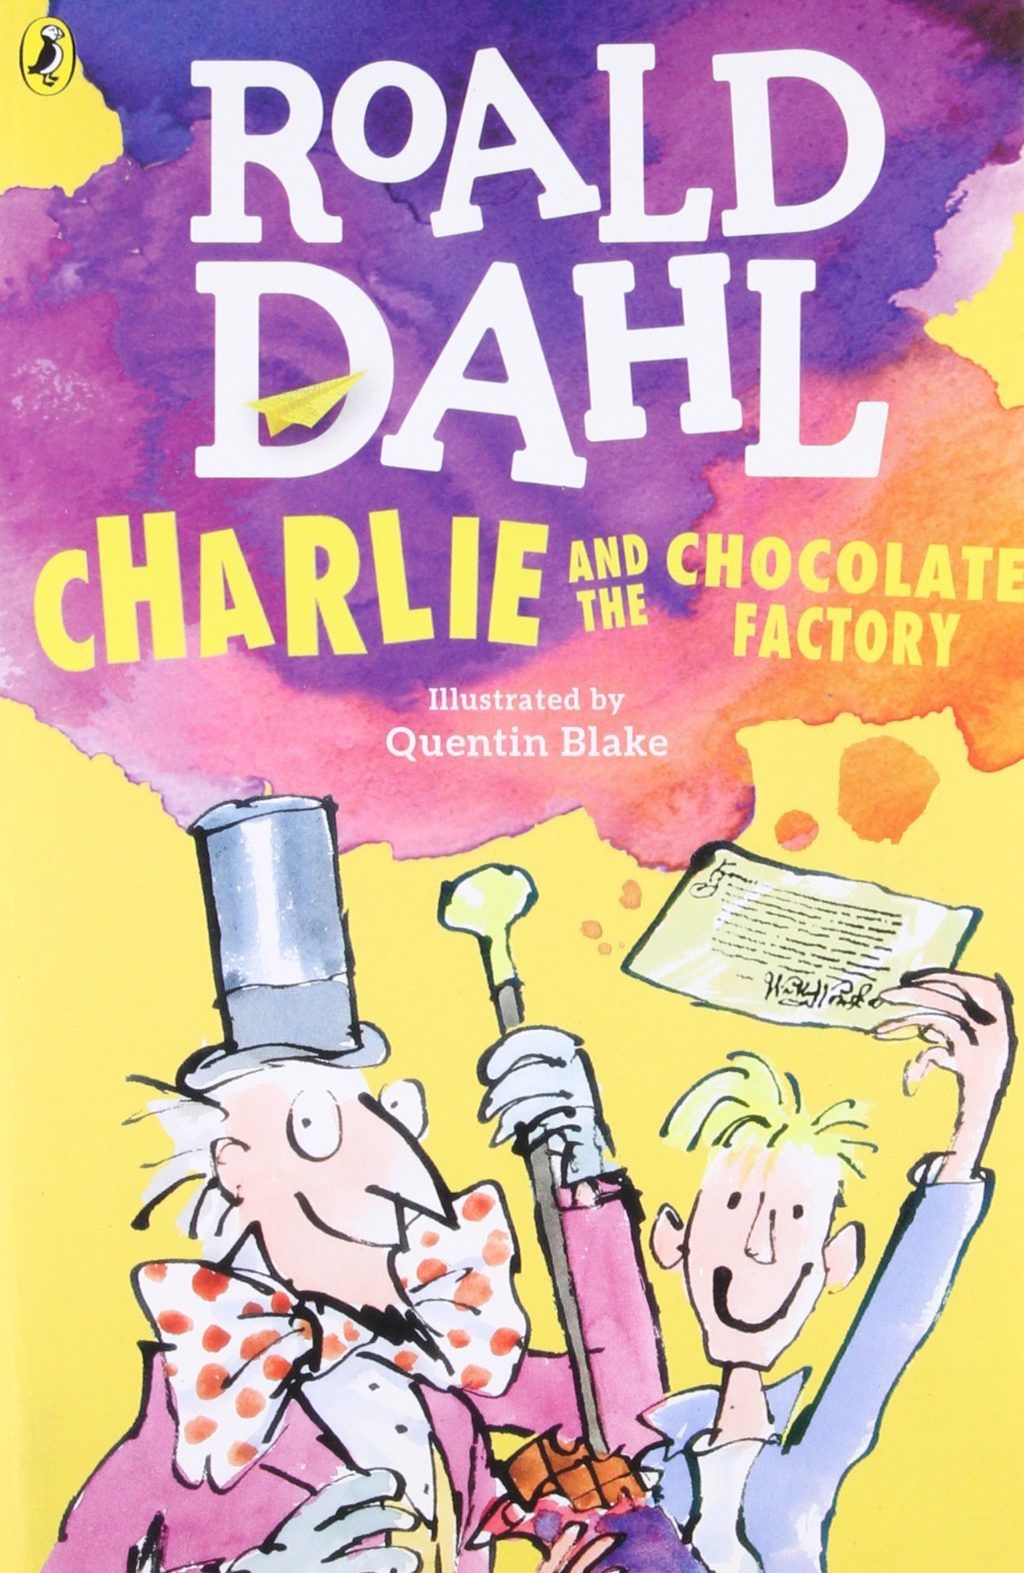 Charlie és a csokoládégyár Roald Dahl viccek a gyerekektől